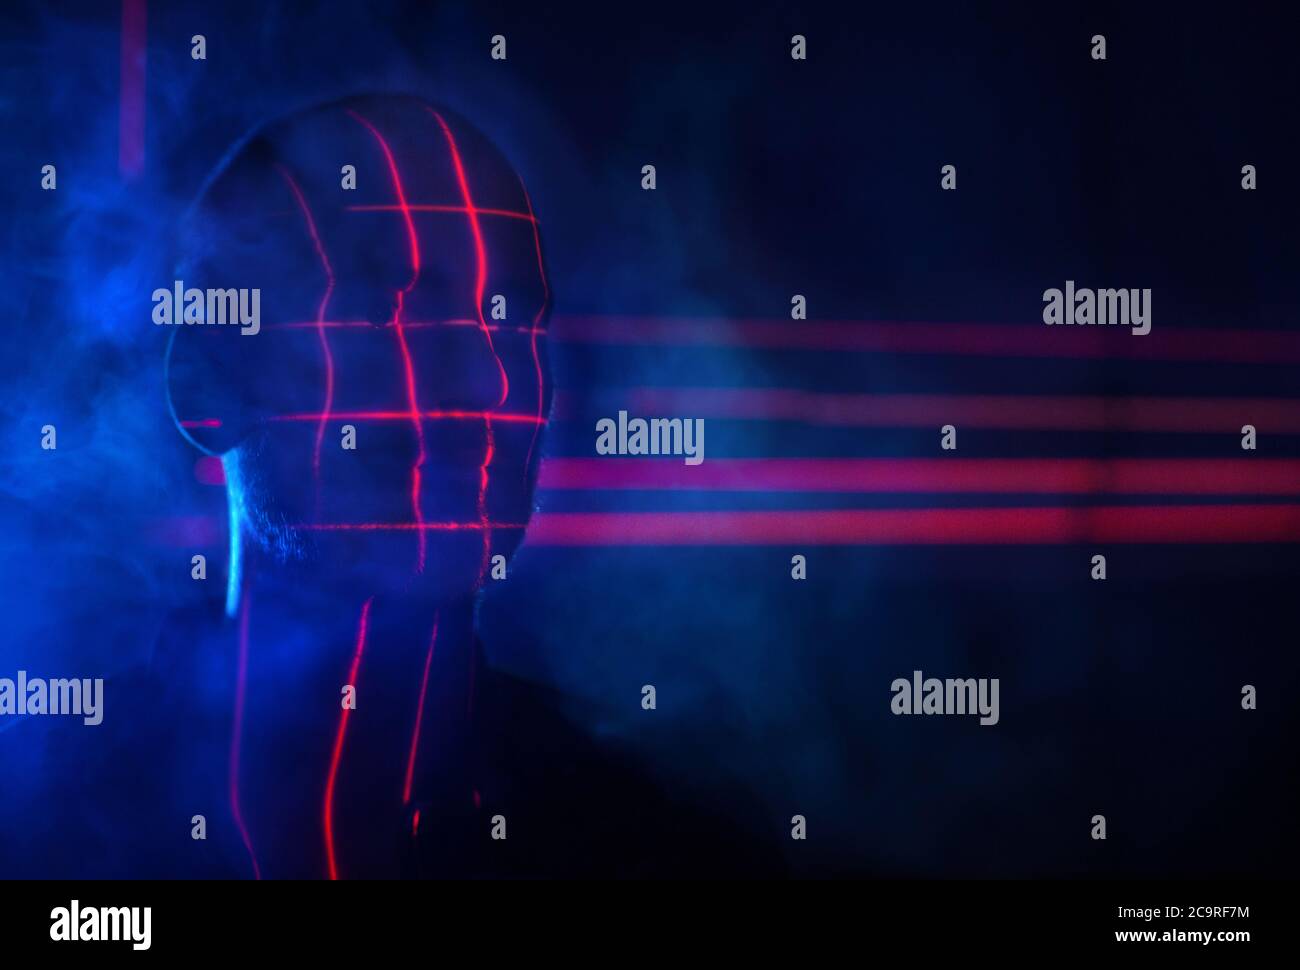 Konzept Identifizieren Beleuchten Gesicht Scan Red Laser. Biometrische Futuristische Gesichtserkennung. Stockfoto